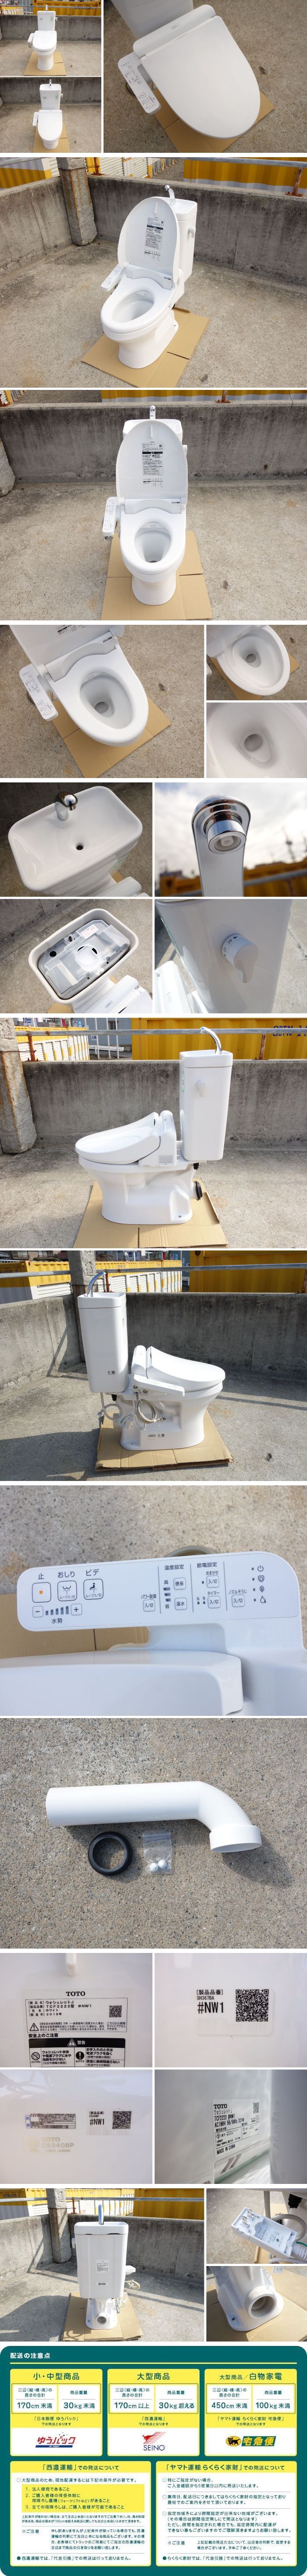 通販超激安D▼TOTO トイレ ウォシュレット シャワートイレ 便器 便座 タンク 便所 洋式 壁排水 電気便座 手洗いあり 2018年 (30250) 便器